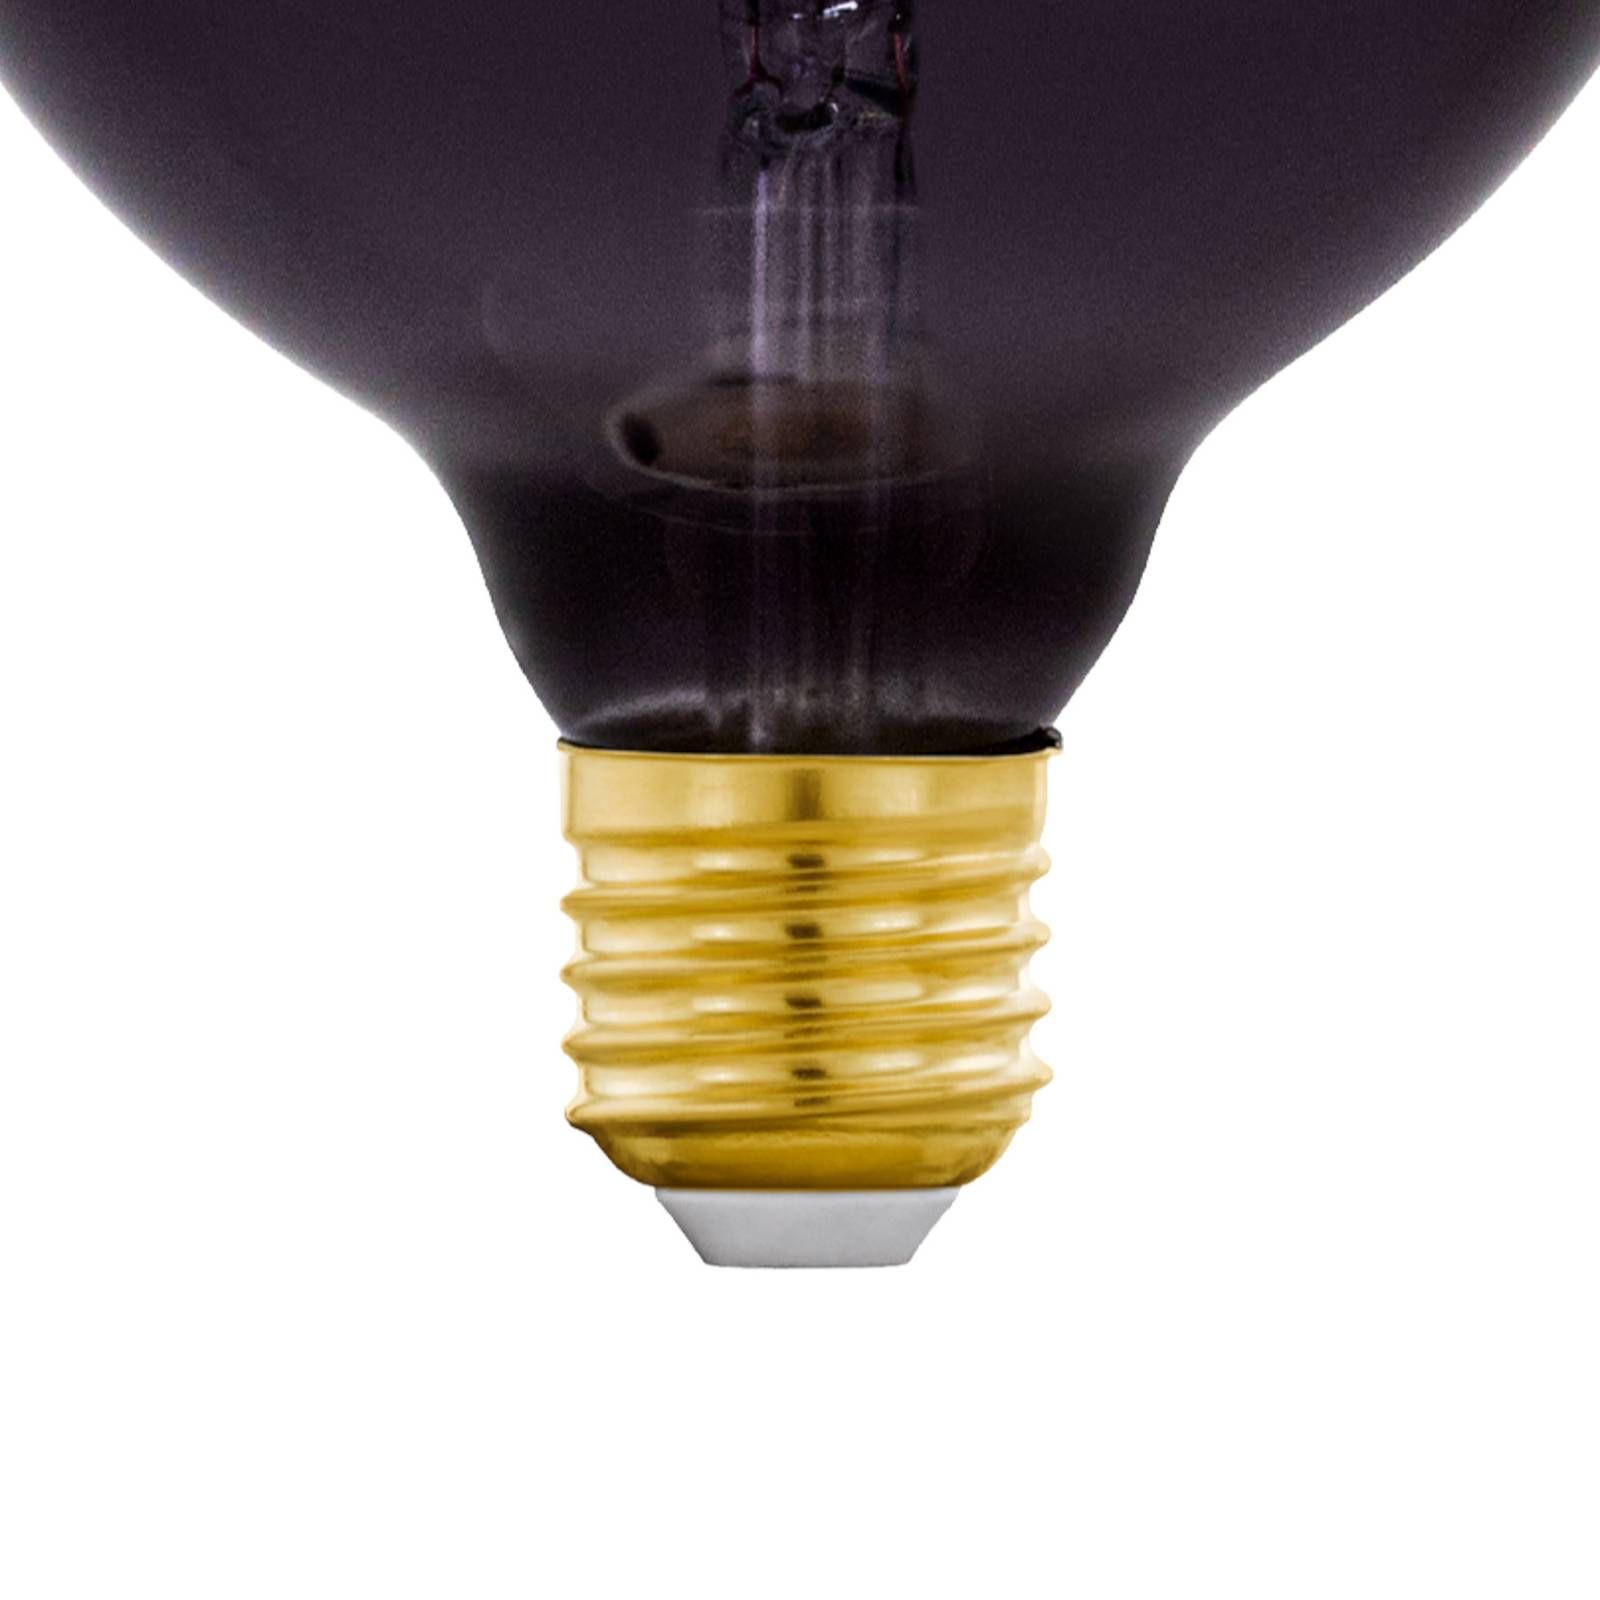 EGLO LED žiarovka E27 4W T120 1800K filament purple dim, sklo, E27, 4W, P: 21 cm